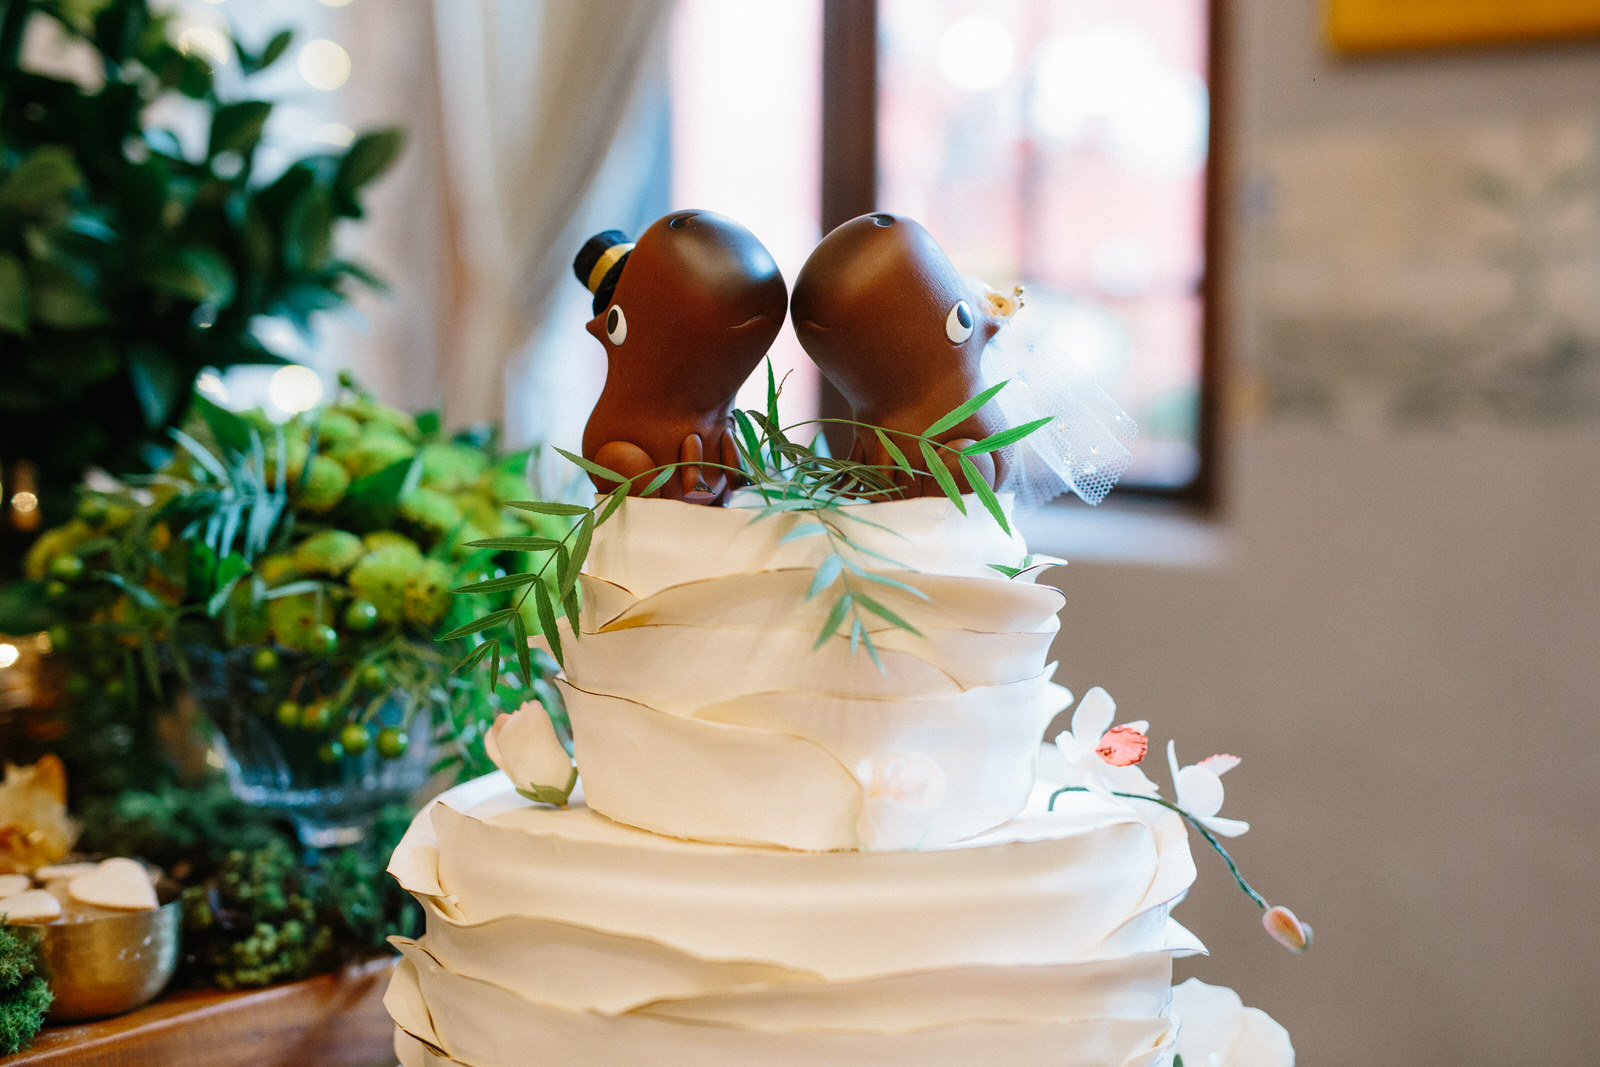 inspiração topo de bolo casamento, topo de bolo diferente para casamento, decoração casamento, ideias bolo casamento, fotografo casamento sp, fotografia de casamento